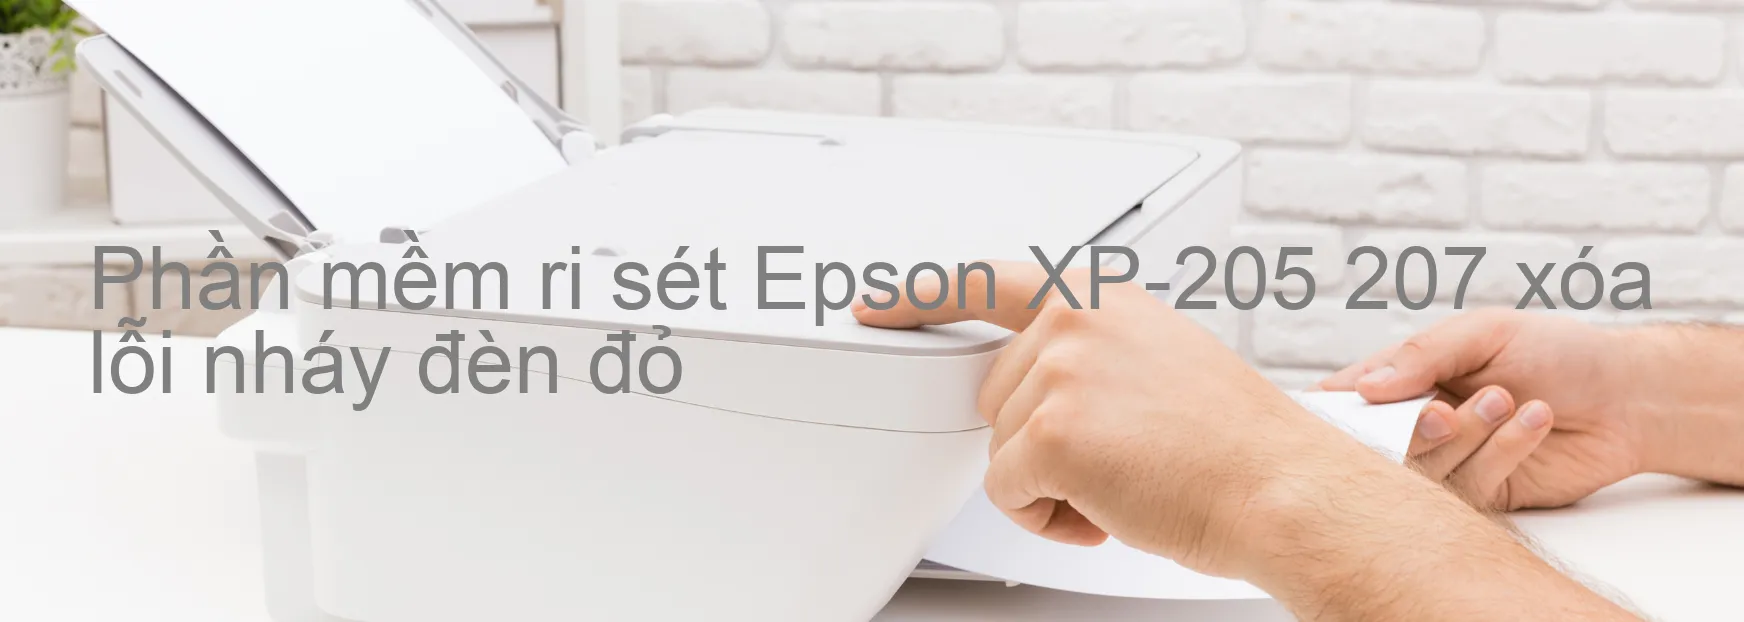 Phần mềm reset Epson XP-205 207 xóa lỗi nháy đèn đỏ